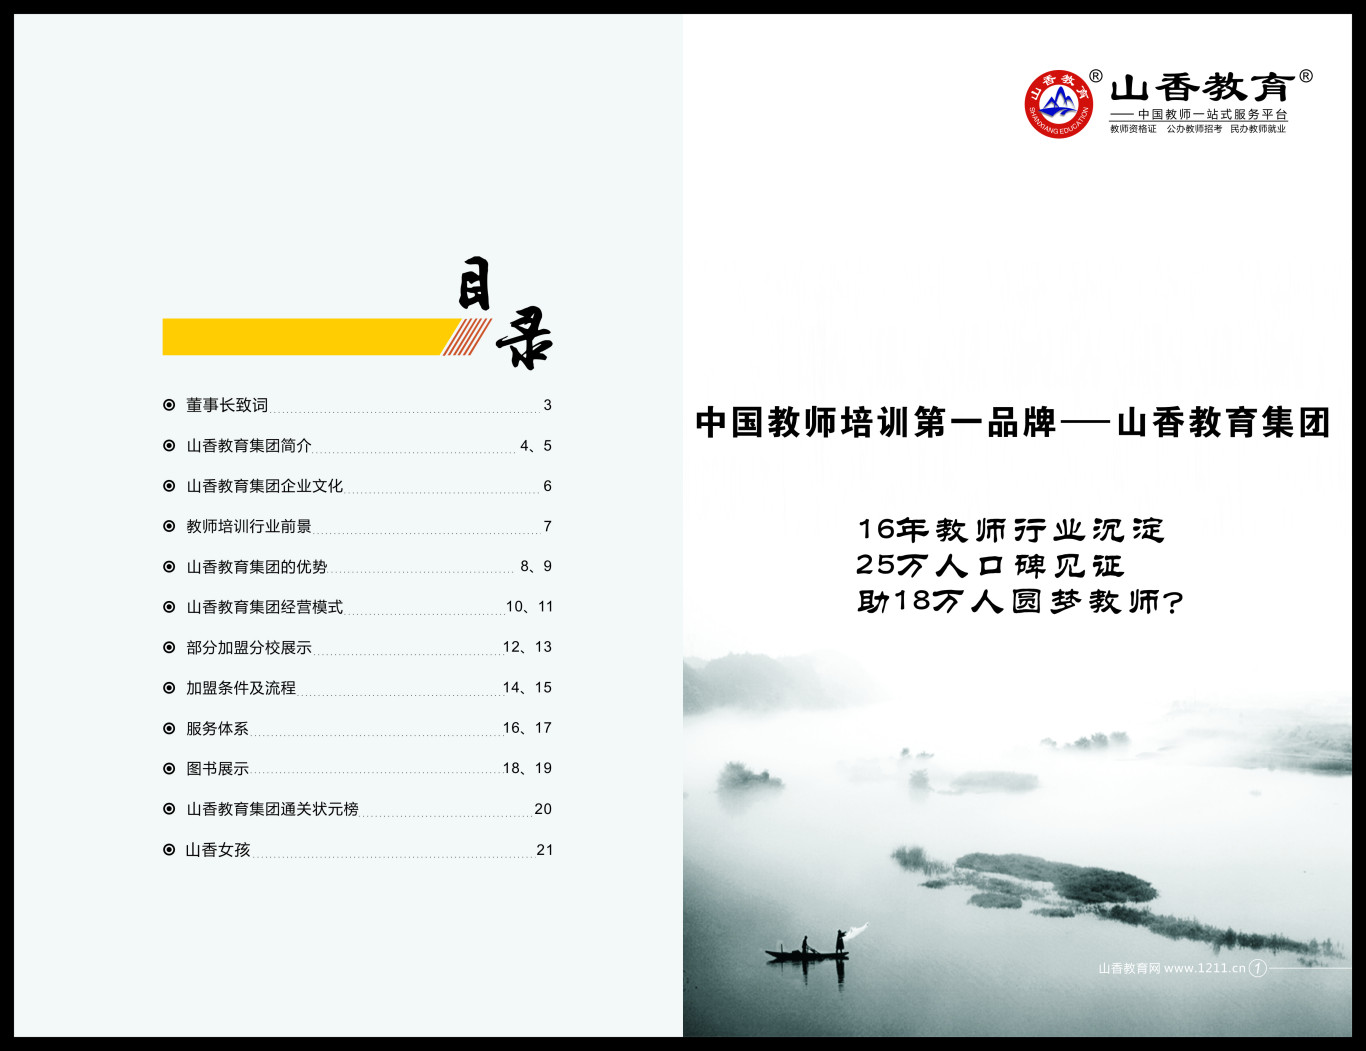 山香教育教师培训项目加盟手册图1